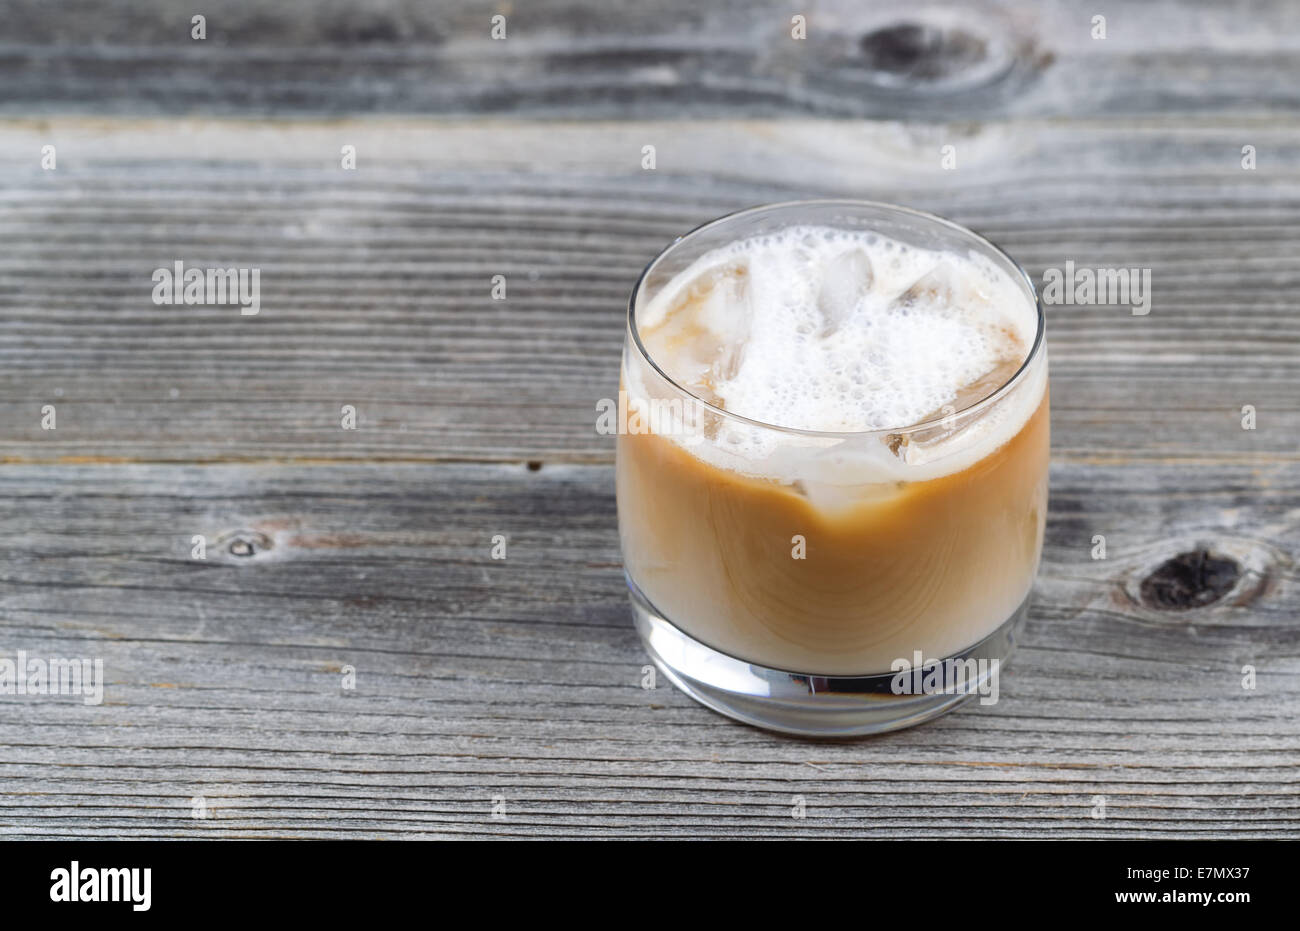 Preparata di fresco caffè ghiacciato con la crema di latte in vetro su legno rustico Foto Stock